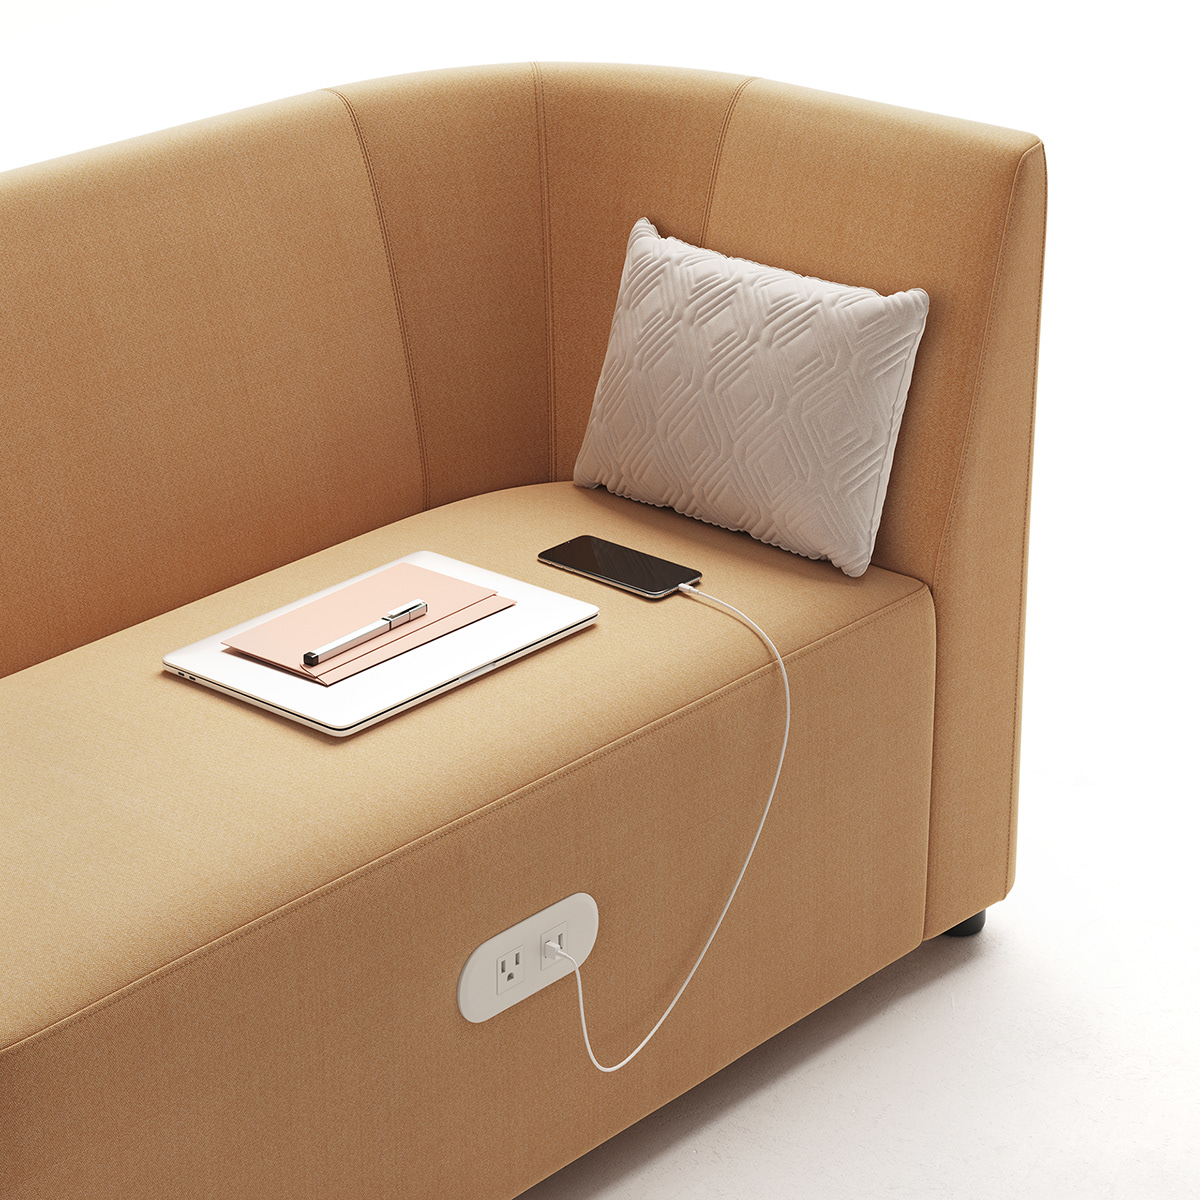 3D architecture CGI chair furniture industrialdesign Interior setdesign sofa visualisation